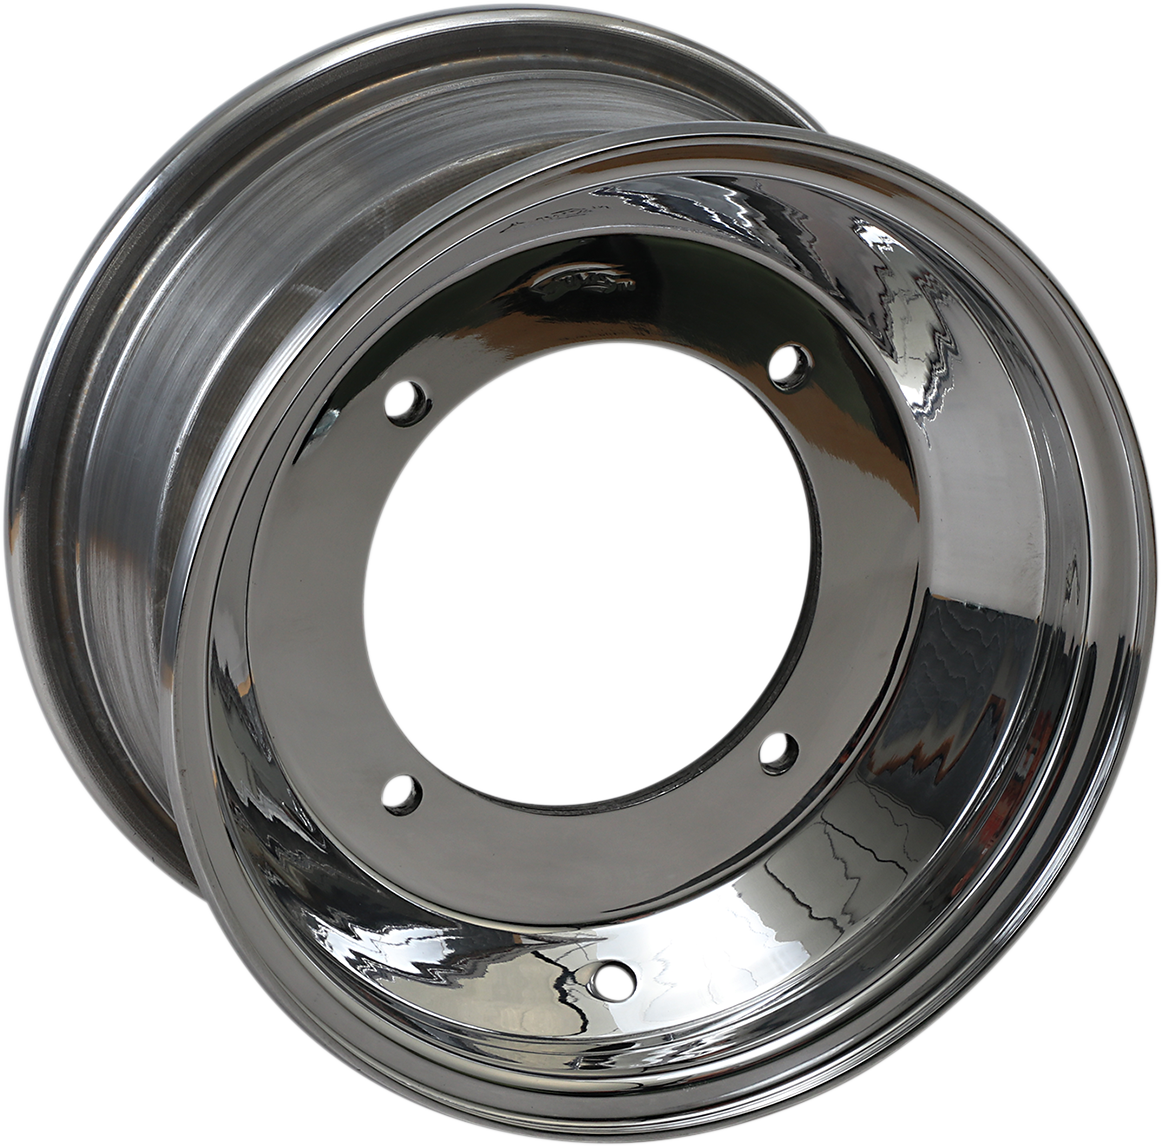 AMS Standard-Lip Spun Wheel - Front - 10x5 - 4/156 - 3+2 261-105156P3